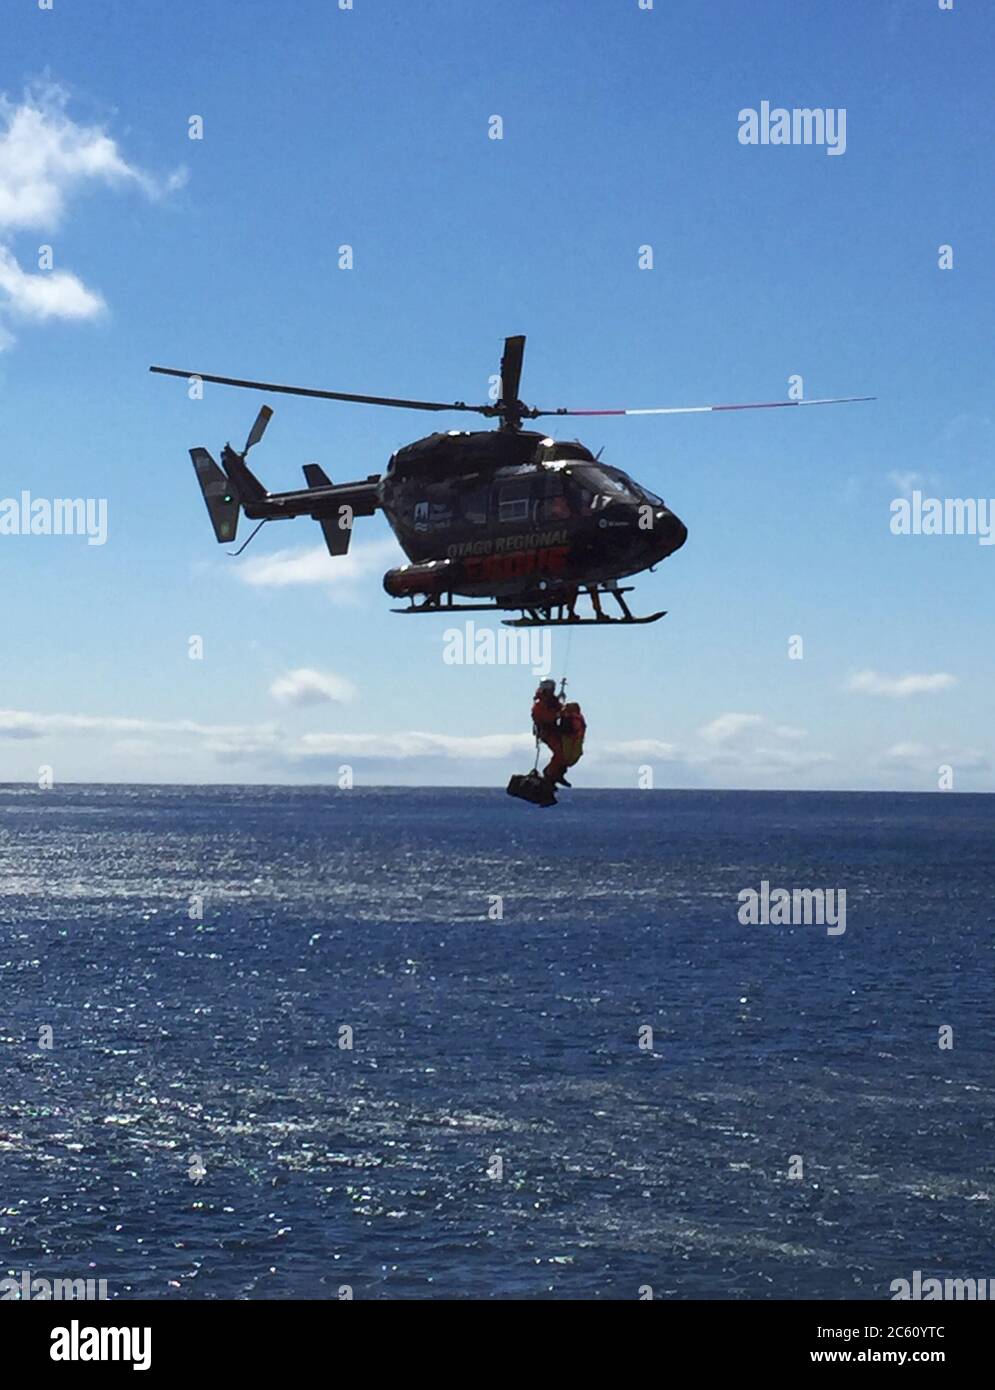 Sauvetage d'urgence en hélicoptère dans les îles d'Auckland lors d'une croisière d'expédition en Nouvelle-Zélande subanarctique. Faire descendre un équipier blessé Banque D'Images